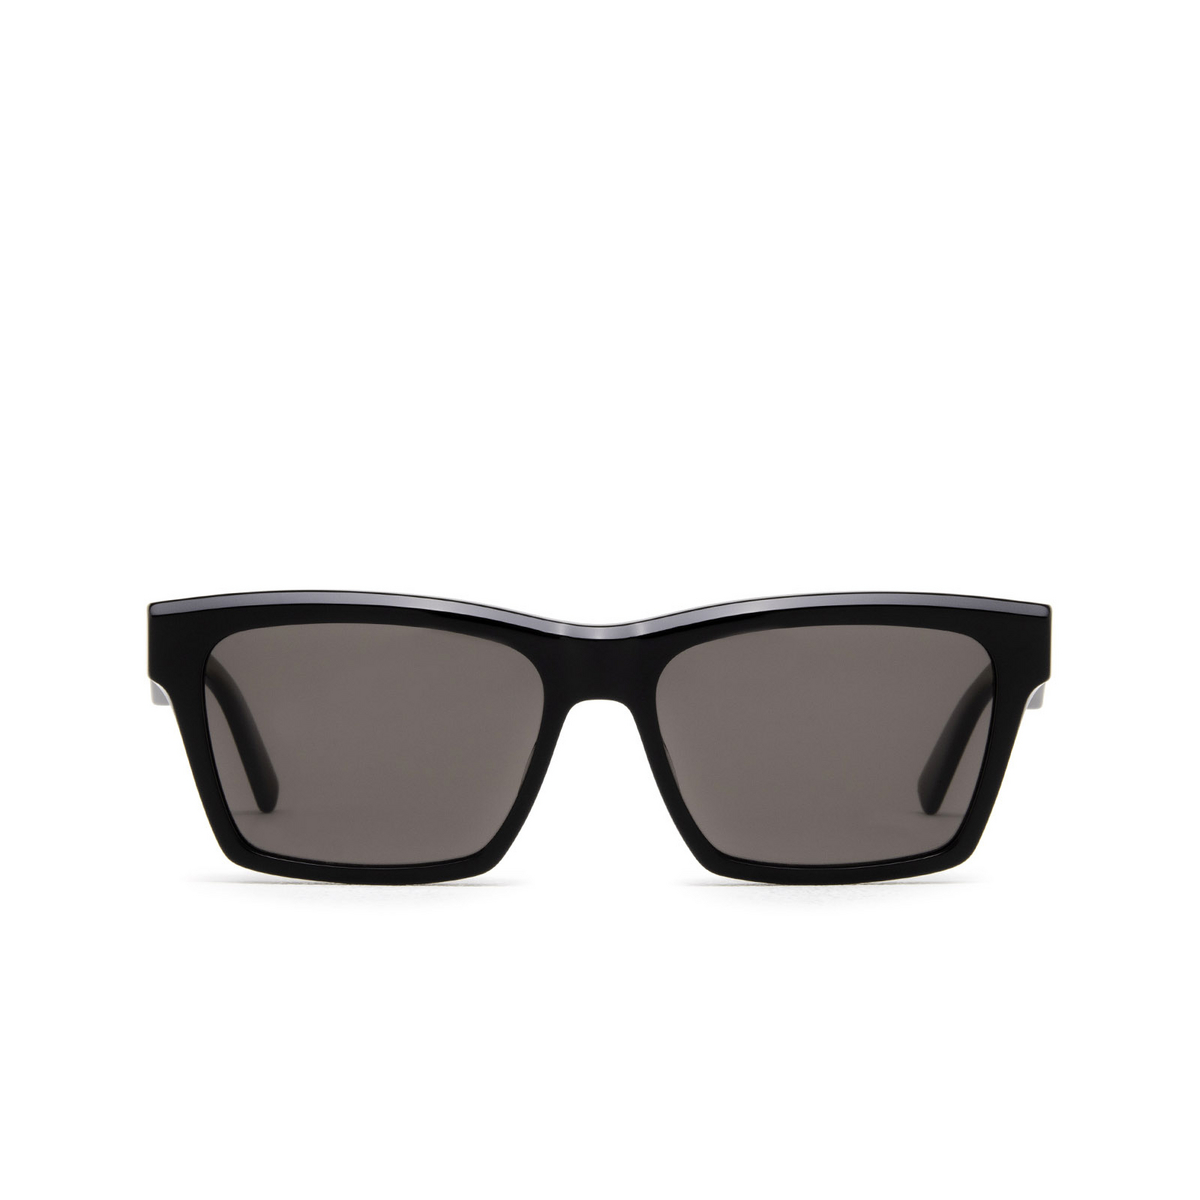 Saint Laurent® Rectangle Sunglasses: SL M104 color Black 004 - front view.